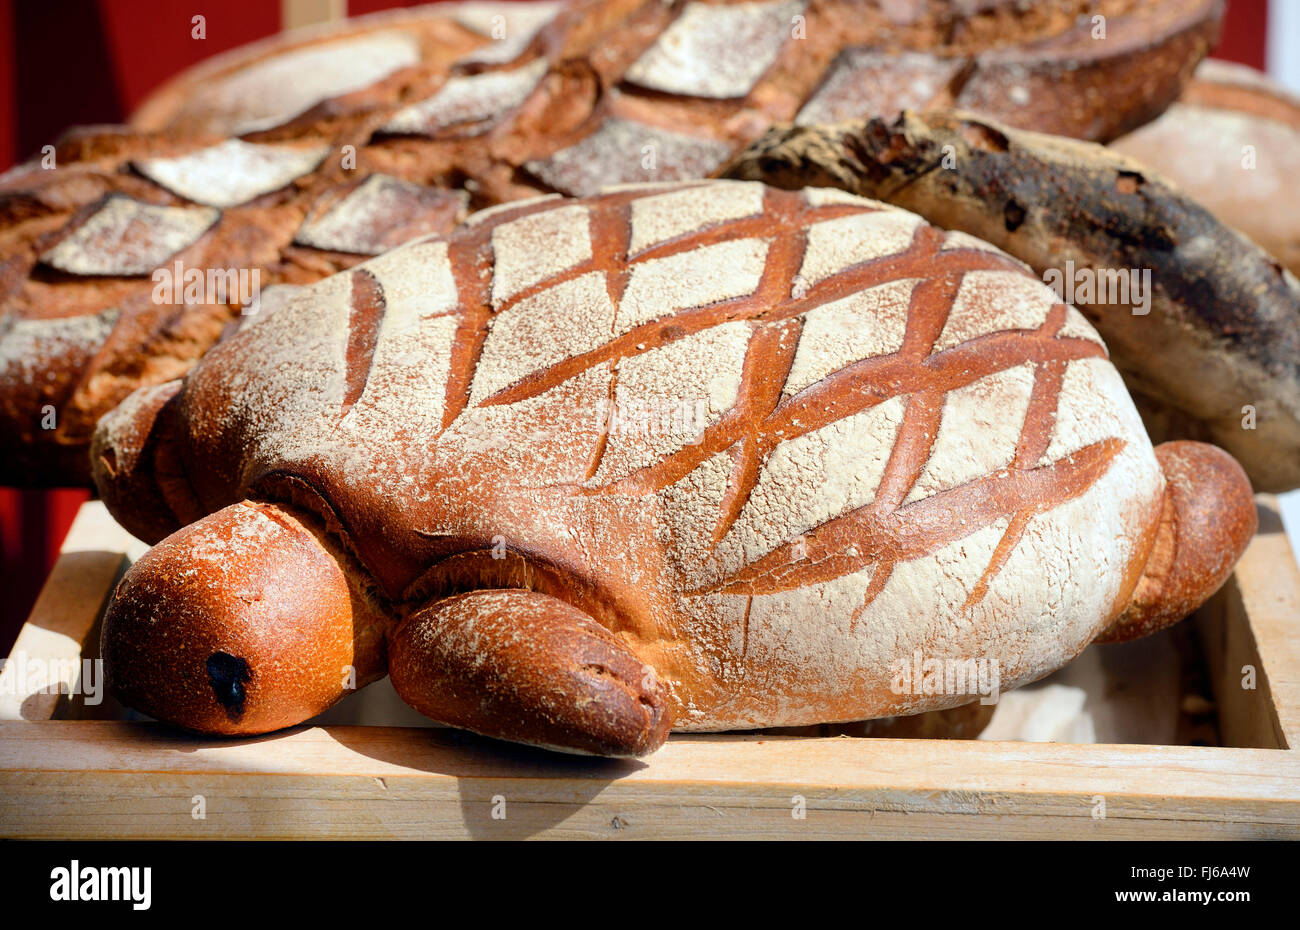 Brot in Form einer Schildkröte Soorts-Hossegor, Frankreich, Aquitanien Stockfoto